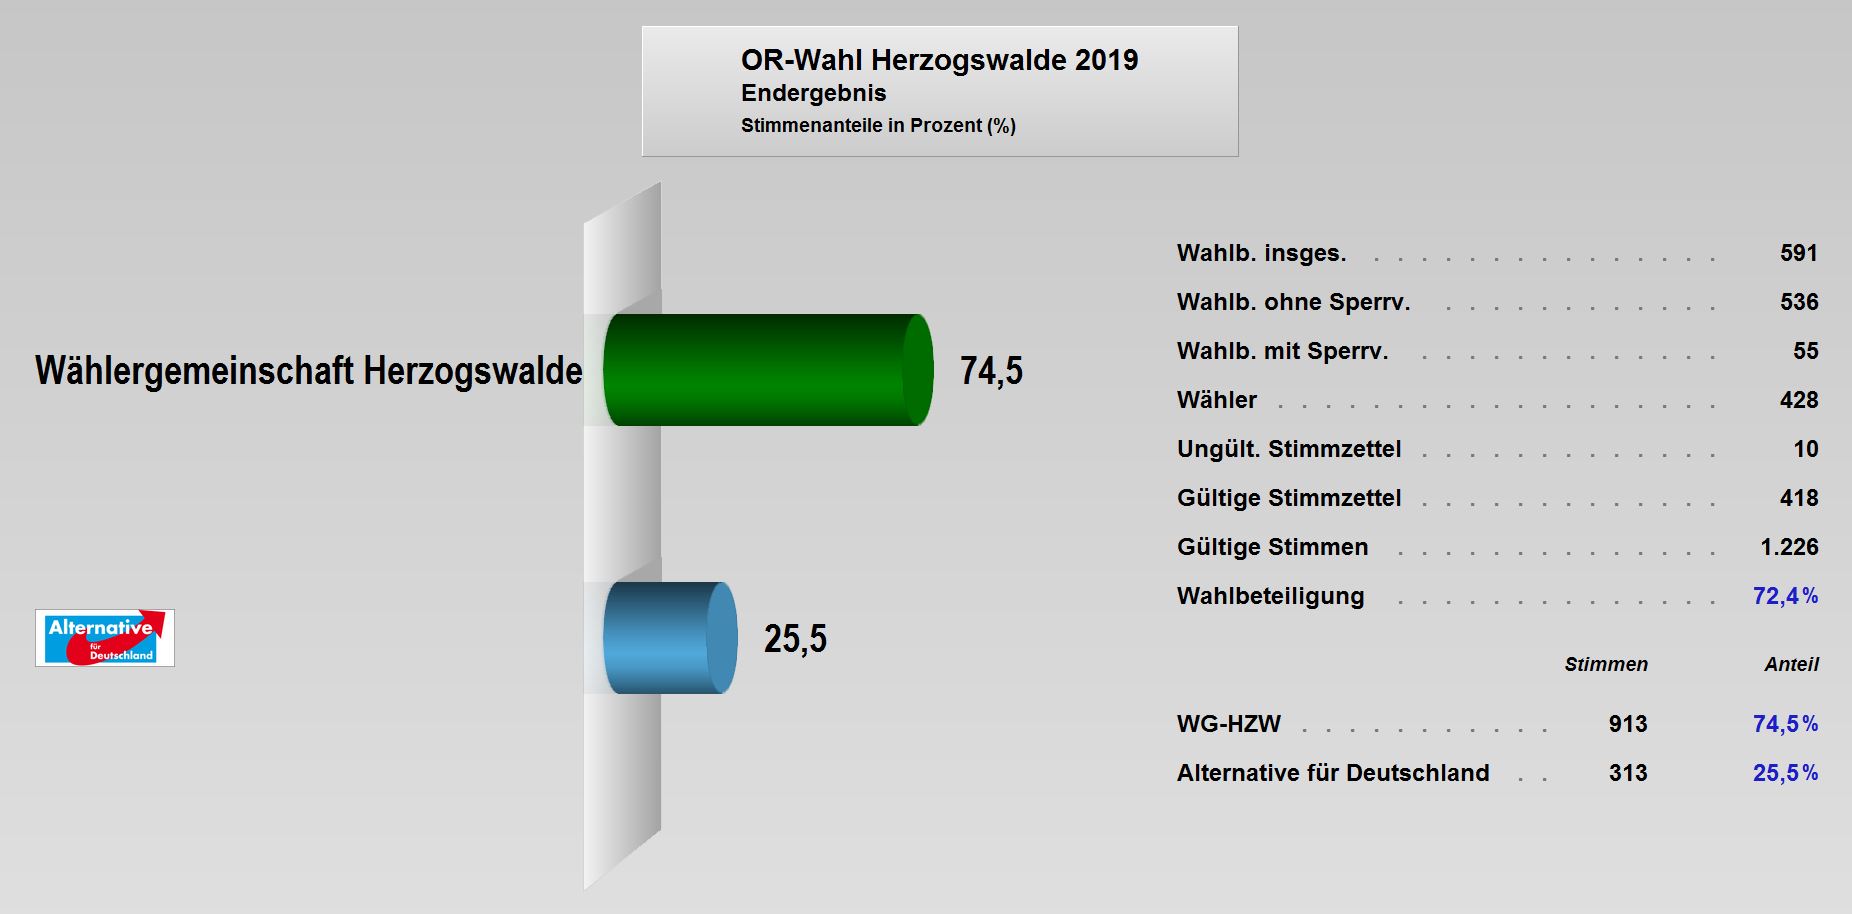 OR-Wahl_2019_Endergebnis_Herzogswalde.JPG